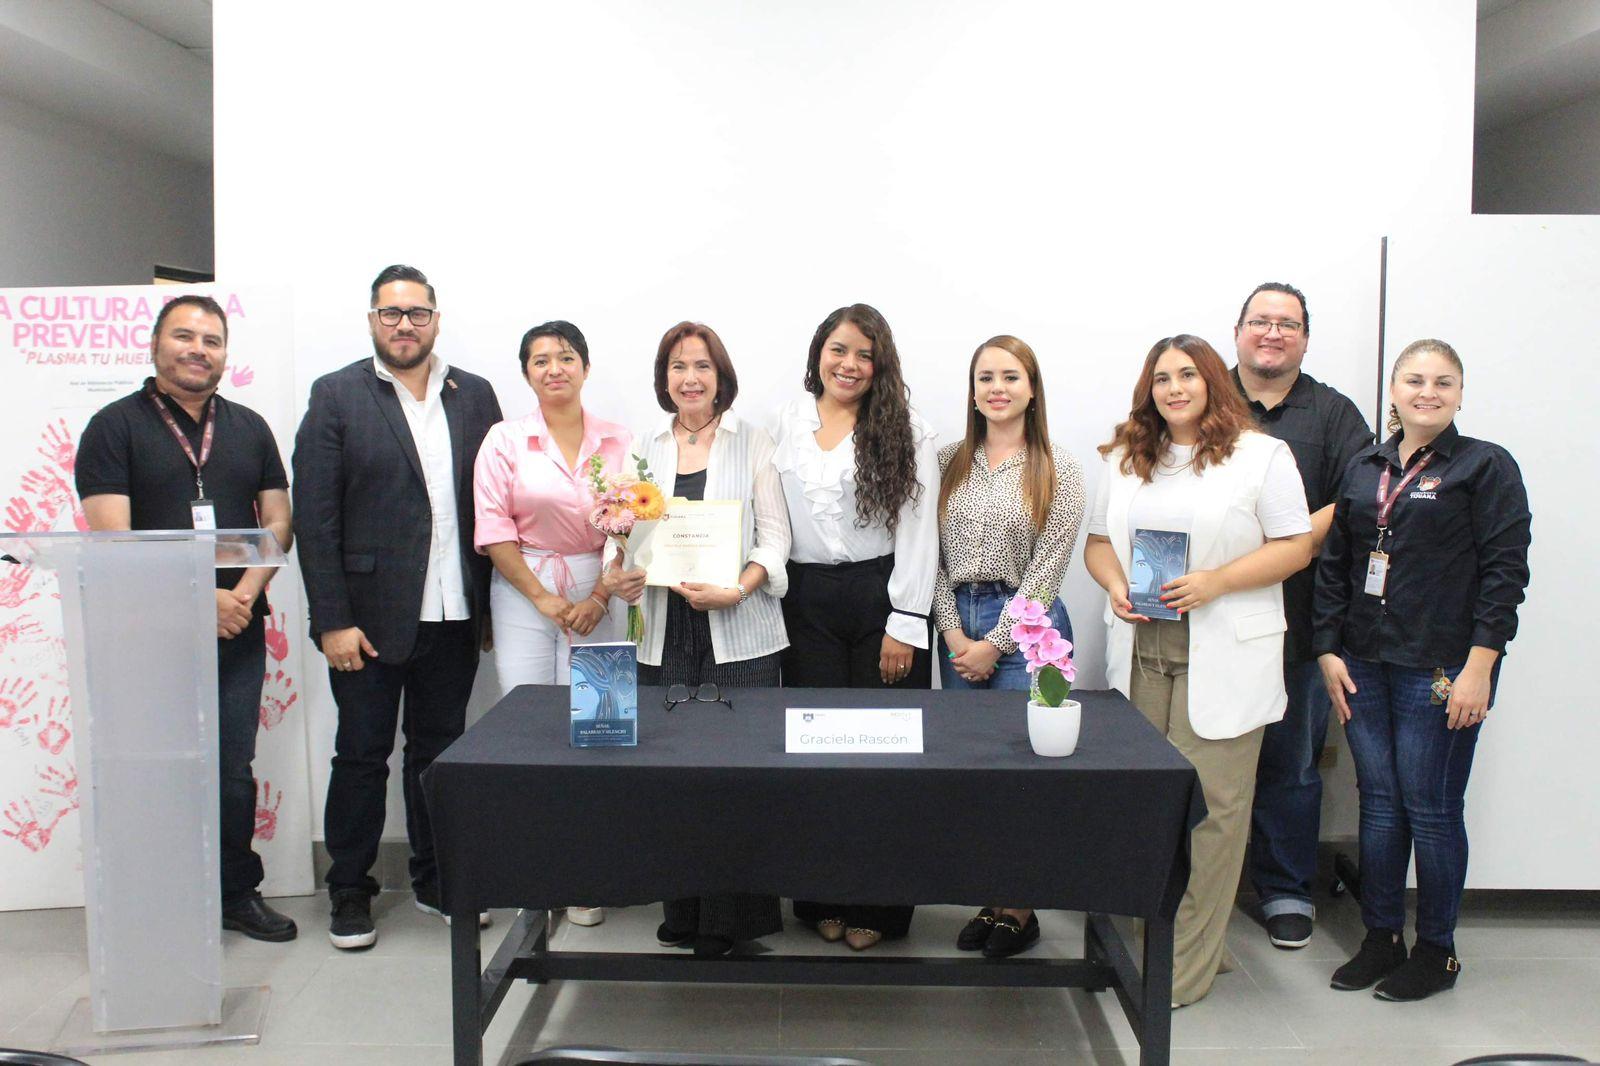 Autora sorda hablante presentó en IMAC Tijuana ejemplar “Señas, palabras y silencio”, desafíos